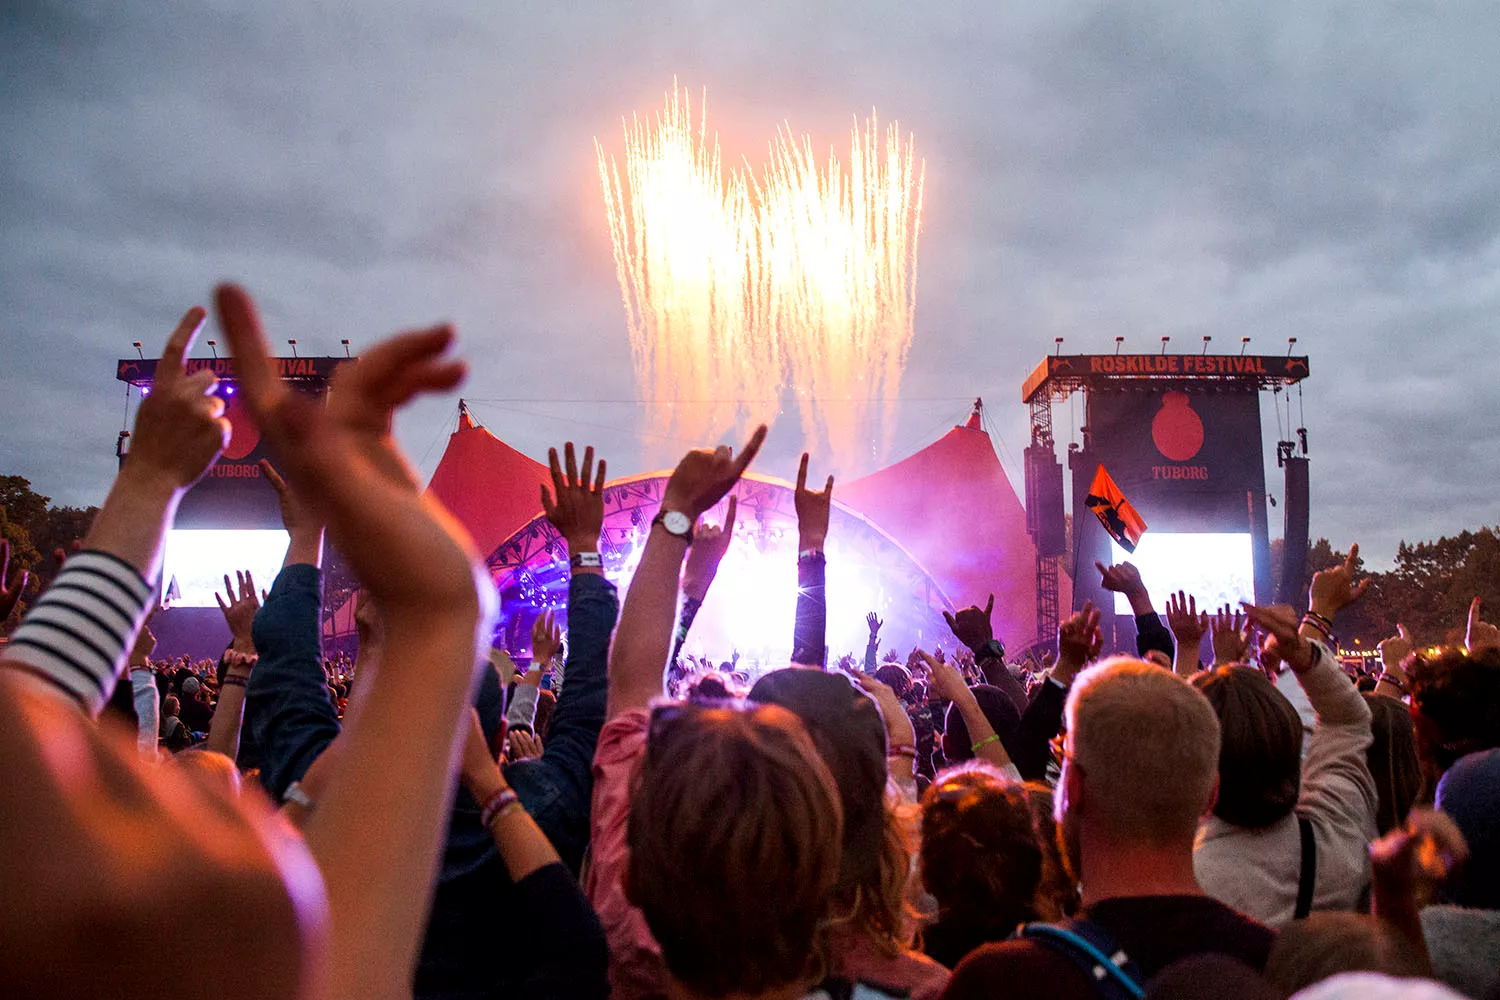 Festivalgæster i rapport om aflyst Roskilde Festival: ”Som en vinter uden jul”